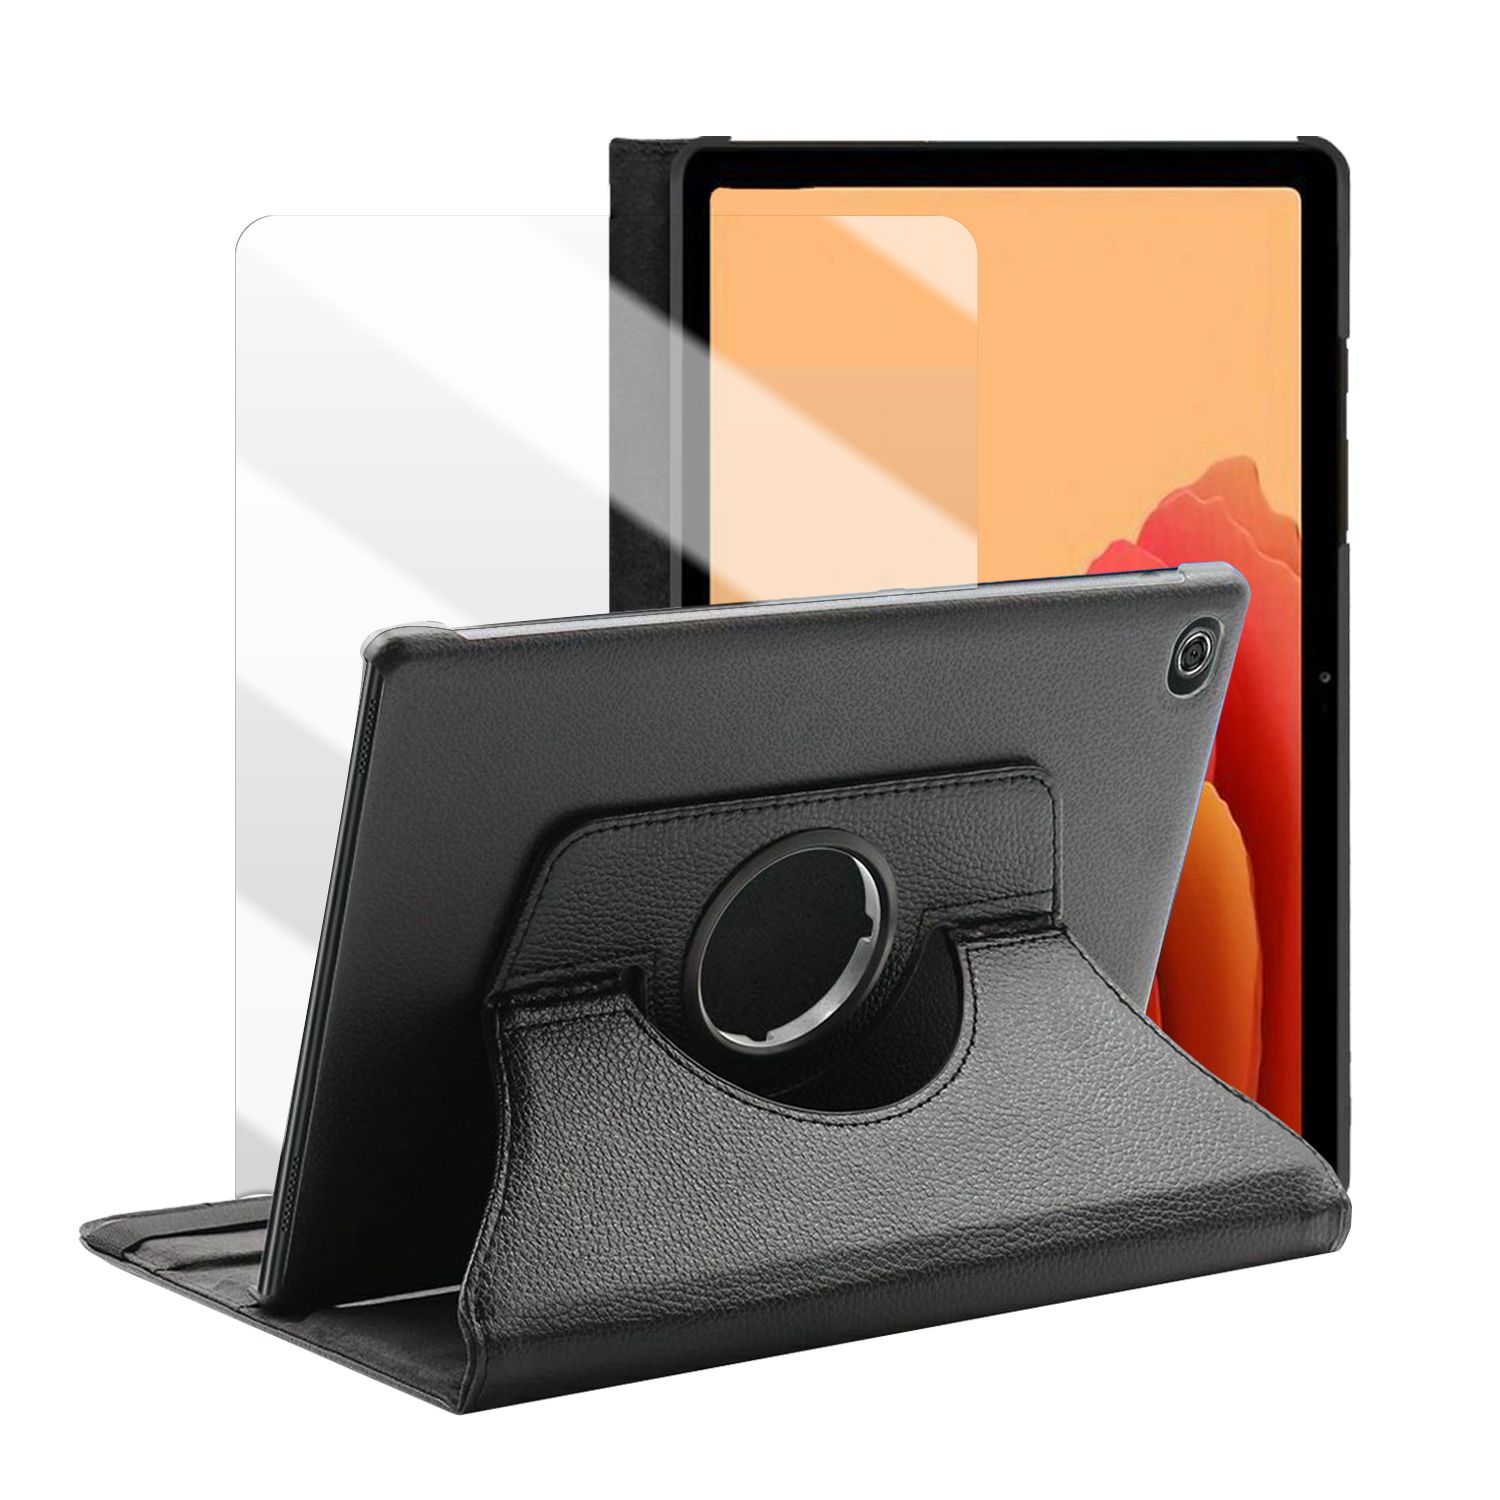 Etui Rotatif En Simili Cuir + Verre Trempé Pour Tablette Samsung Galaxy Tab A7 10.4 (2020) Sm-T500 / Sm-T505 - Noir -Visiodirect -